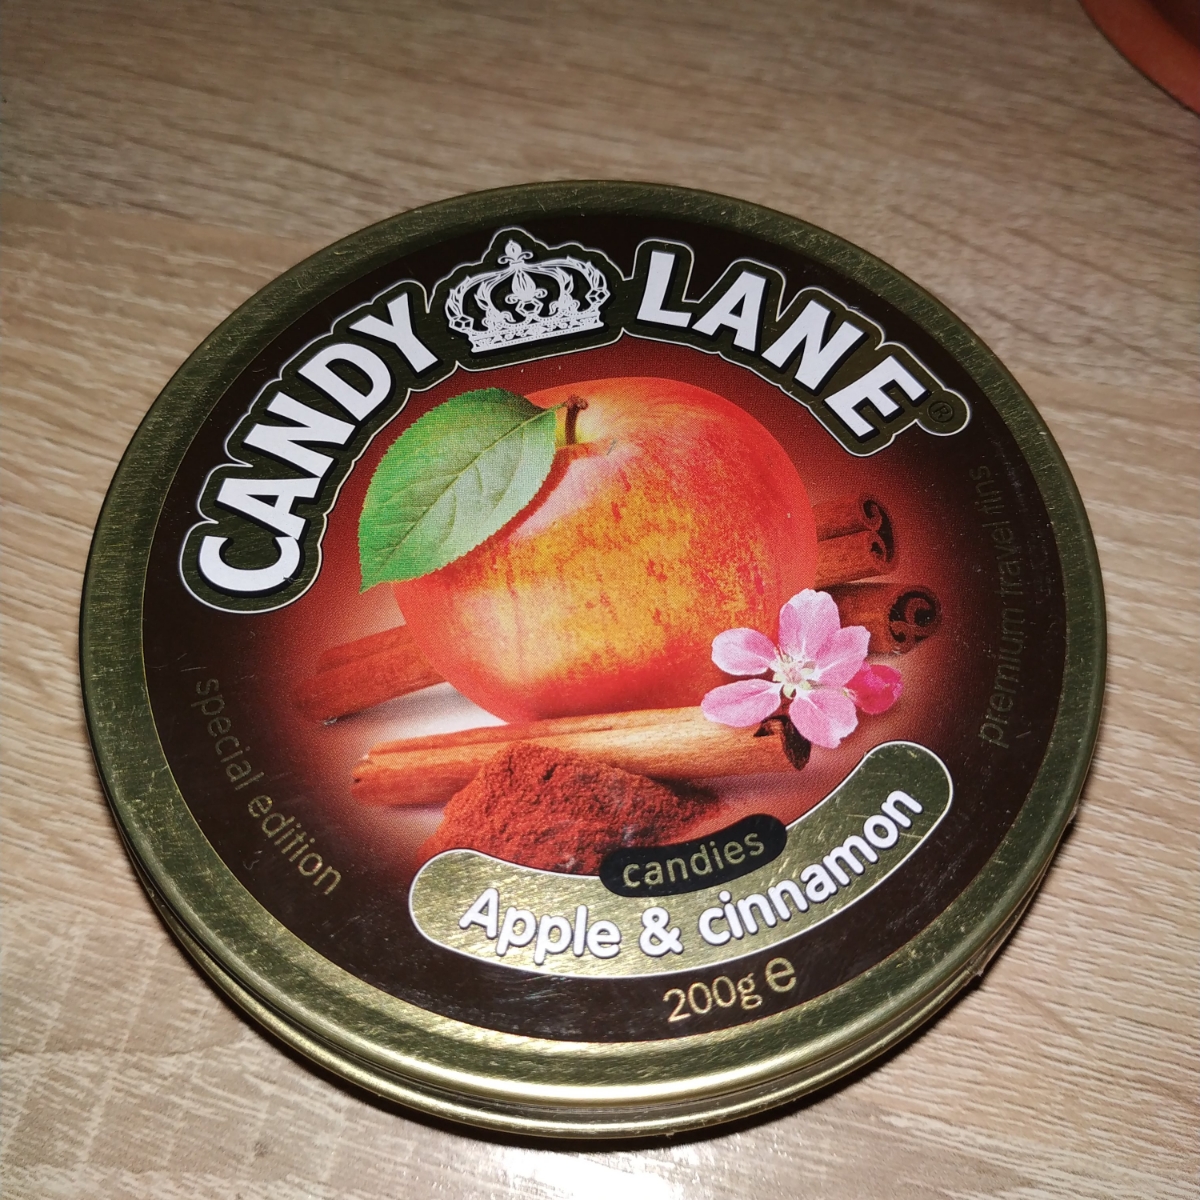 Candy Lane леденцы яблоко с корицей. Яблоко с корицей конфеты Candy Lane. Candy Lane леденцы в пакете, 90. Производитель "сладкая фантазия". Производитель dolce